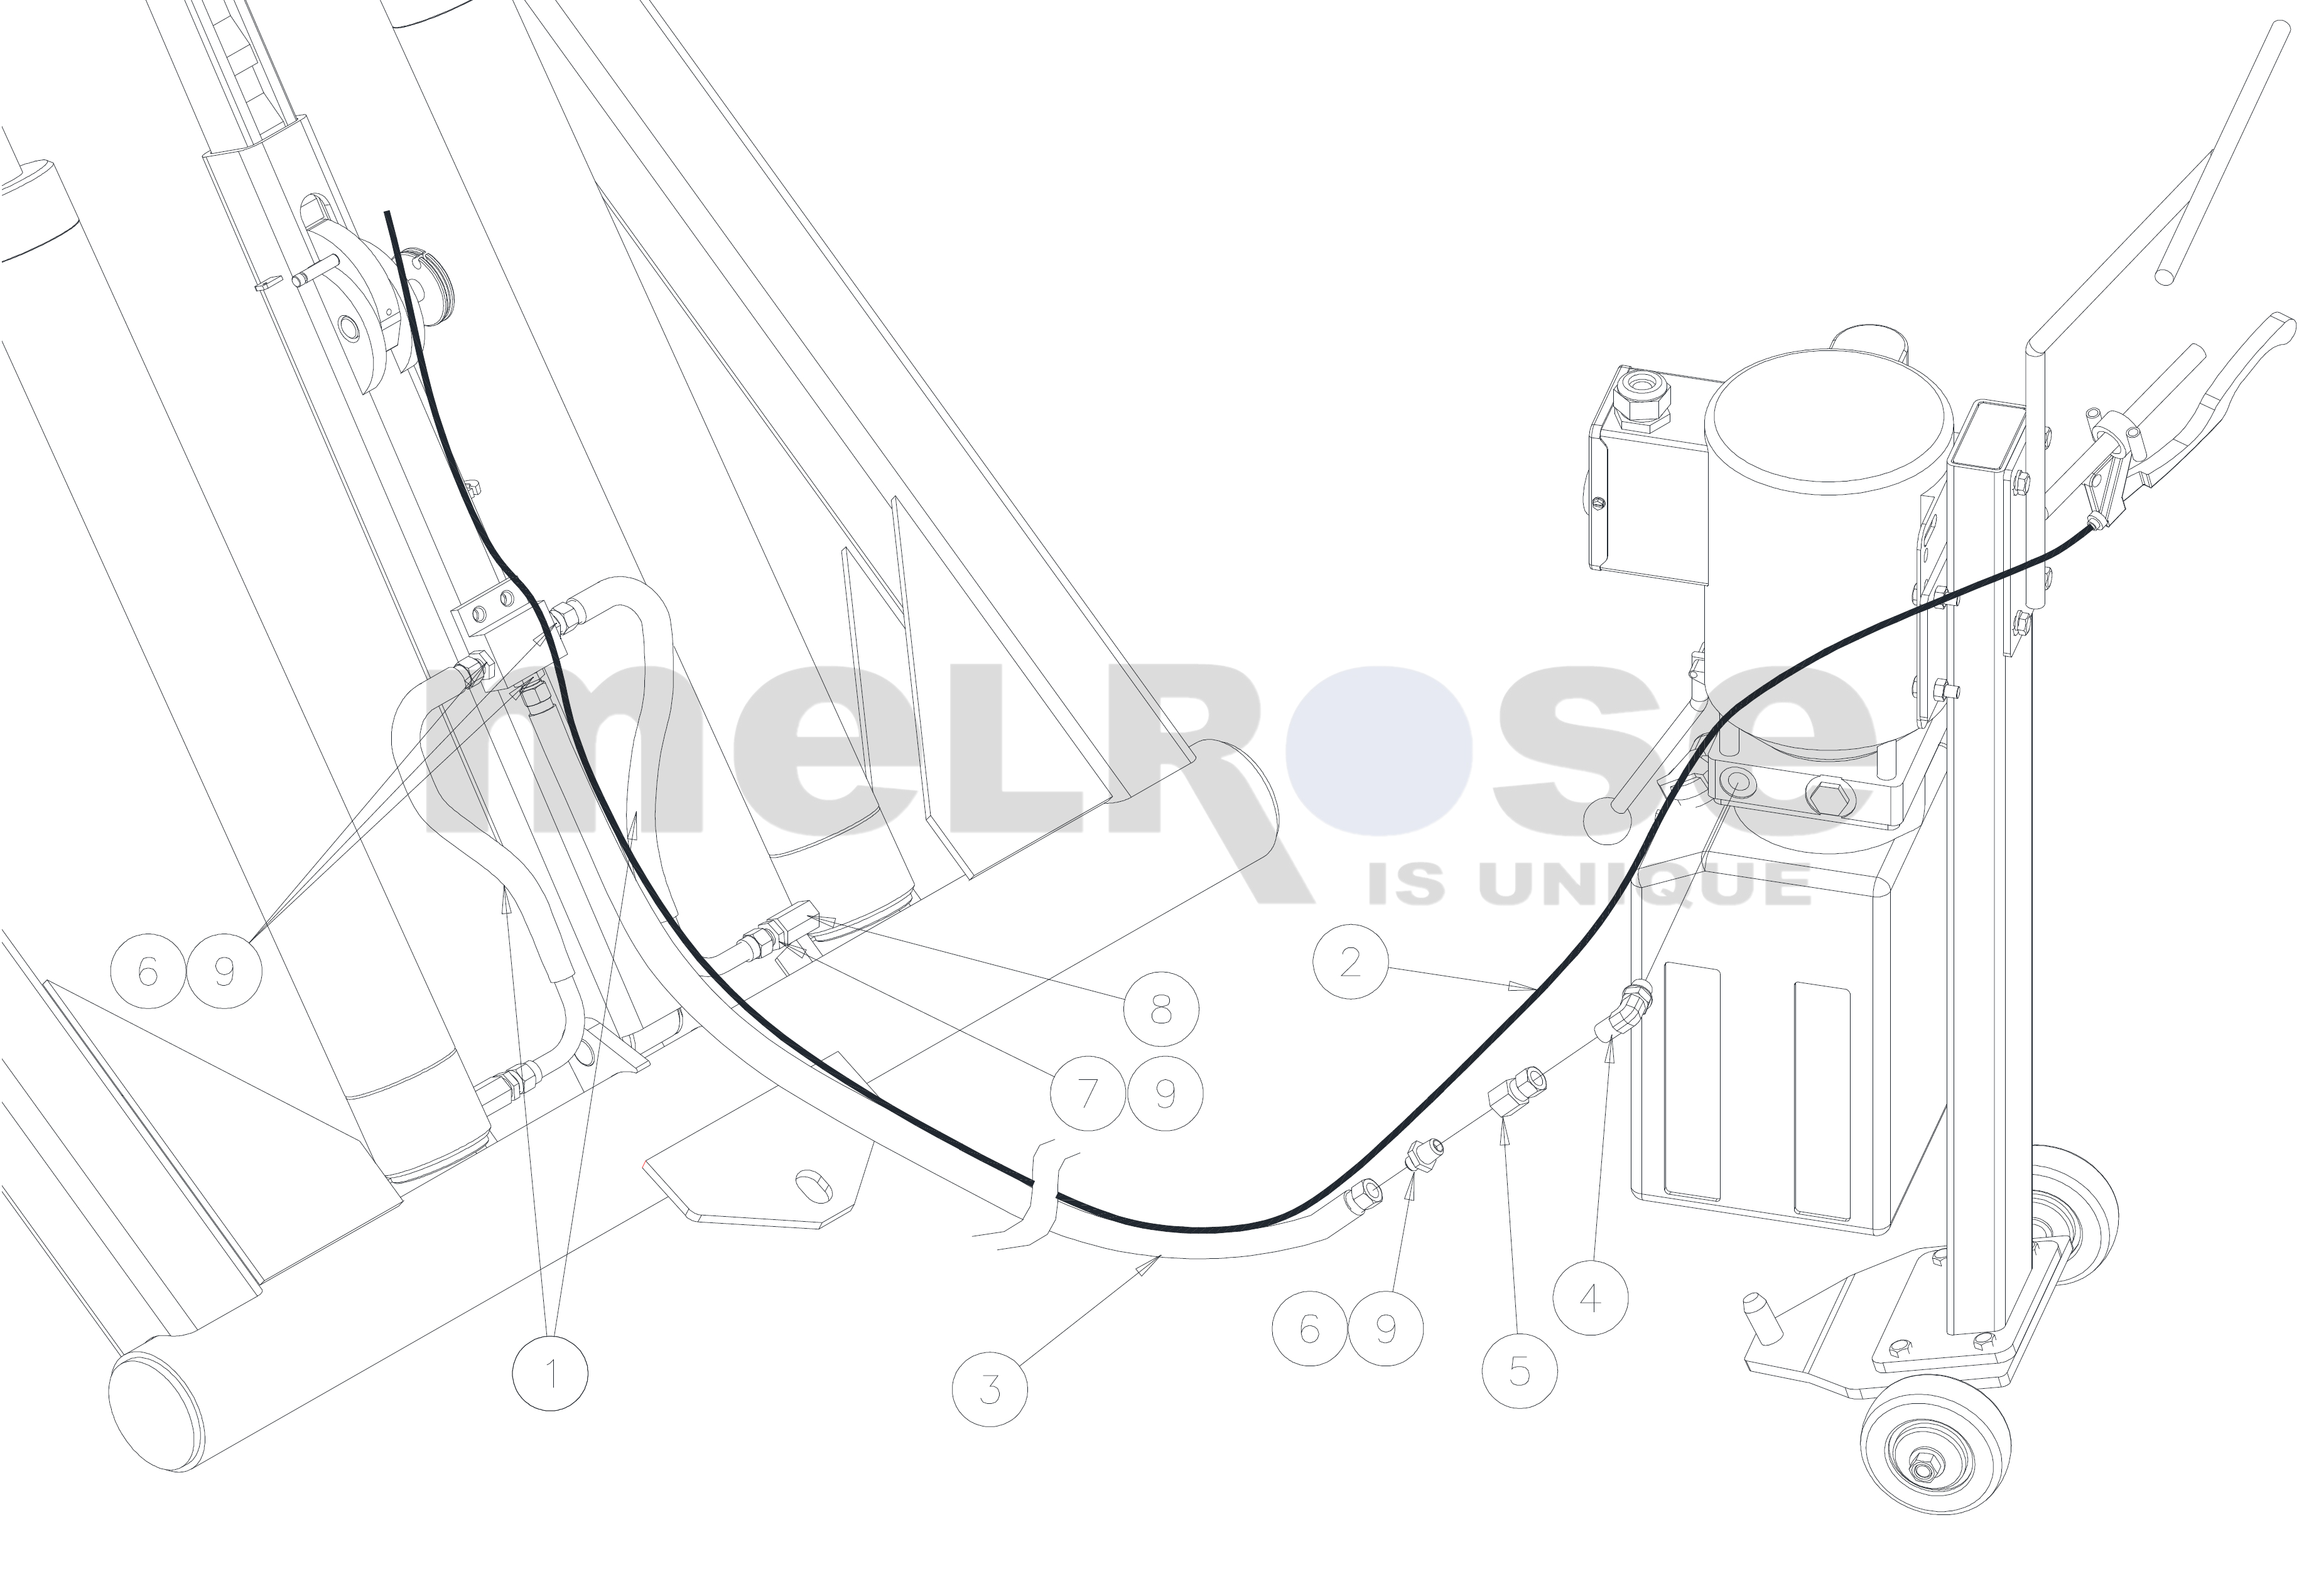 mr6-new-hydraulic-lock-release-diagram-wm.jpg